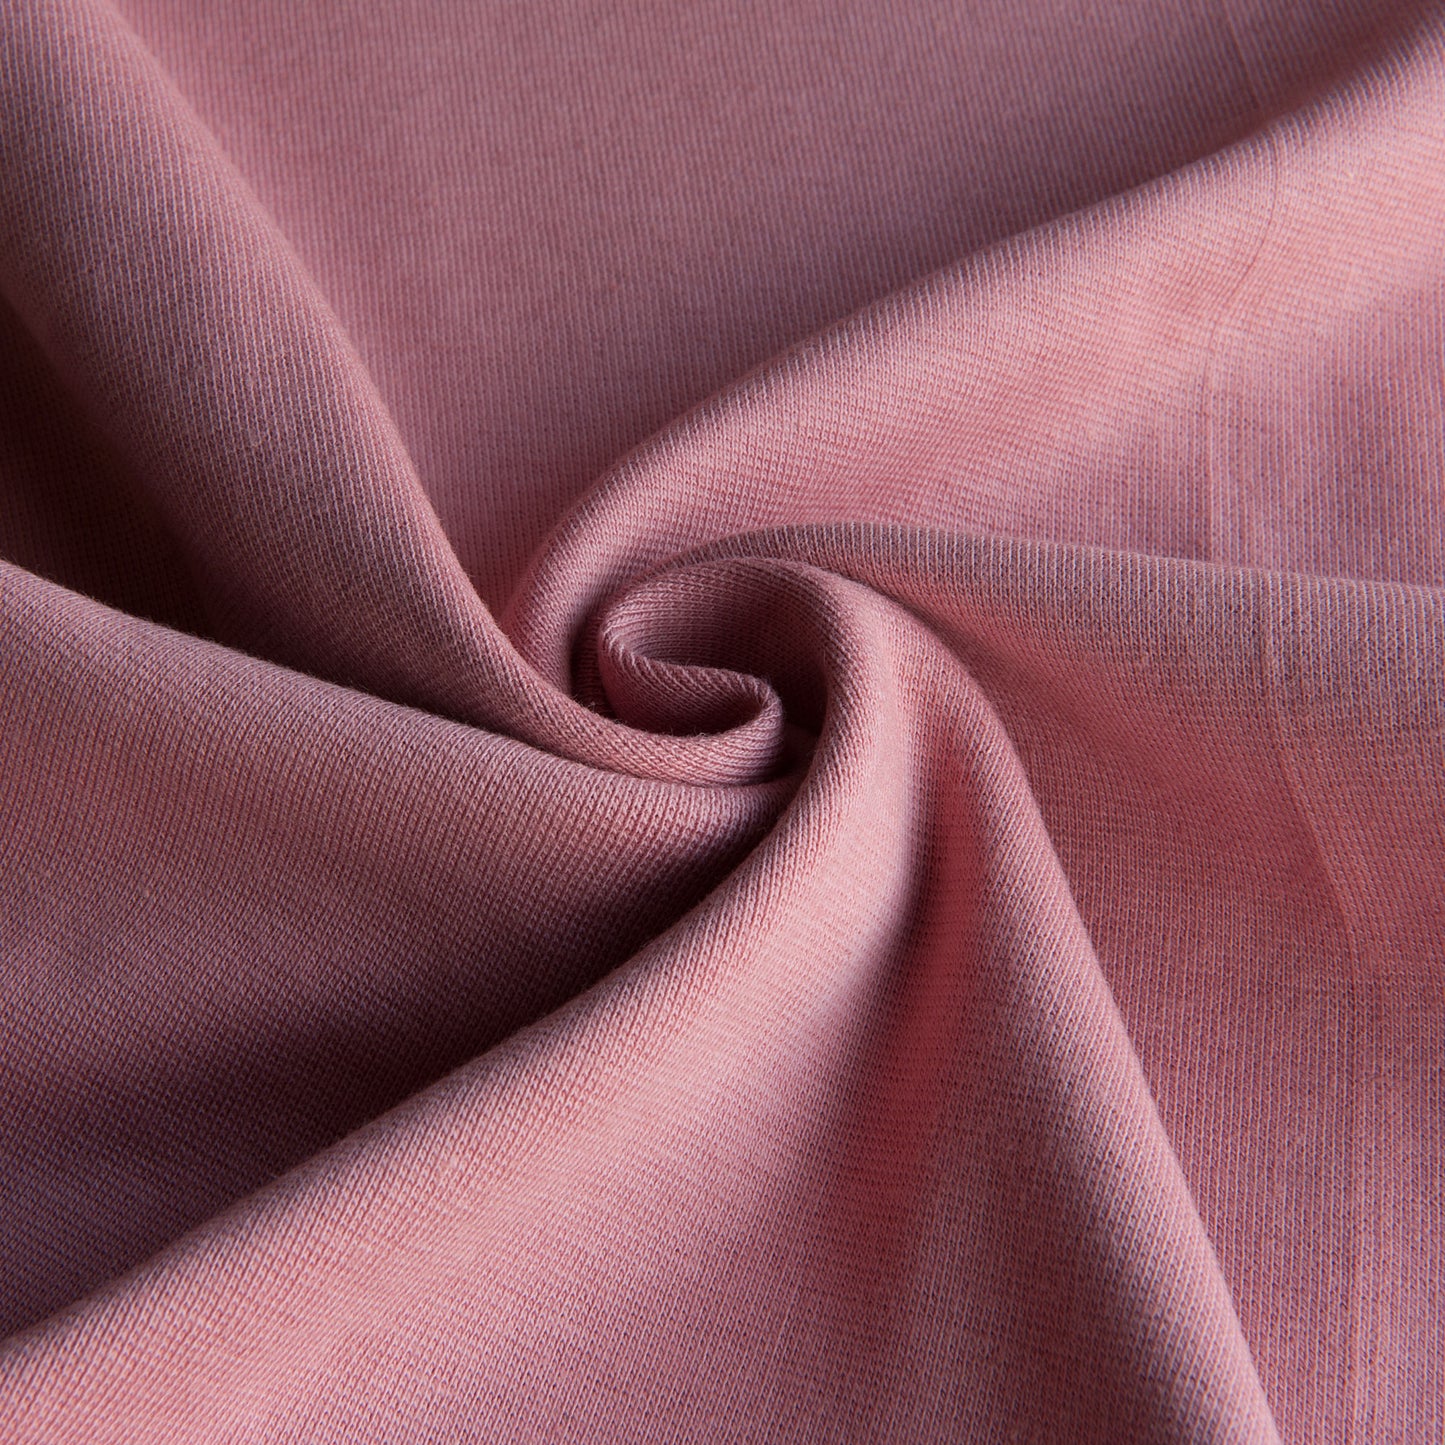 Organic Cotton Tubular Ribbing in Dusky Pink